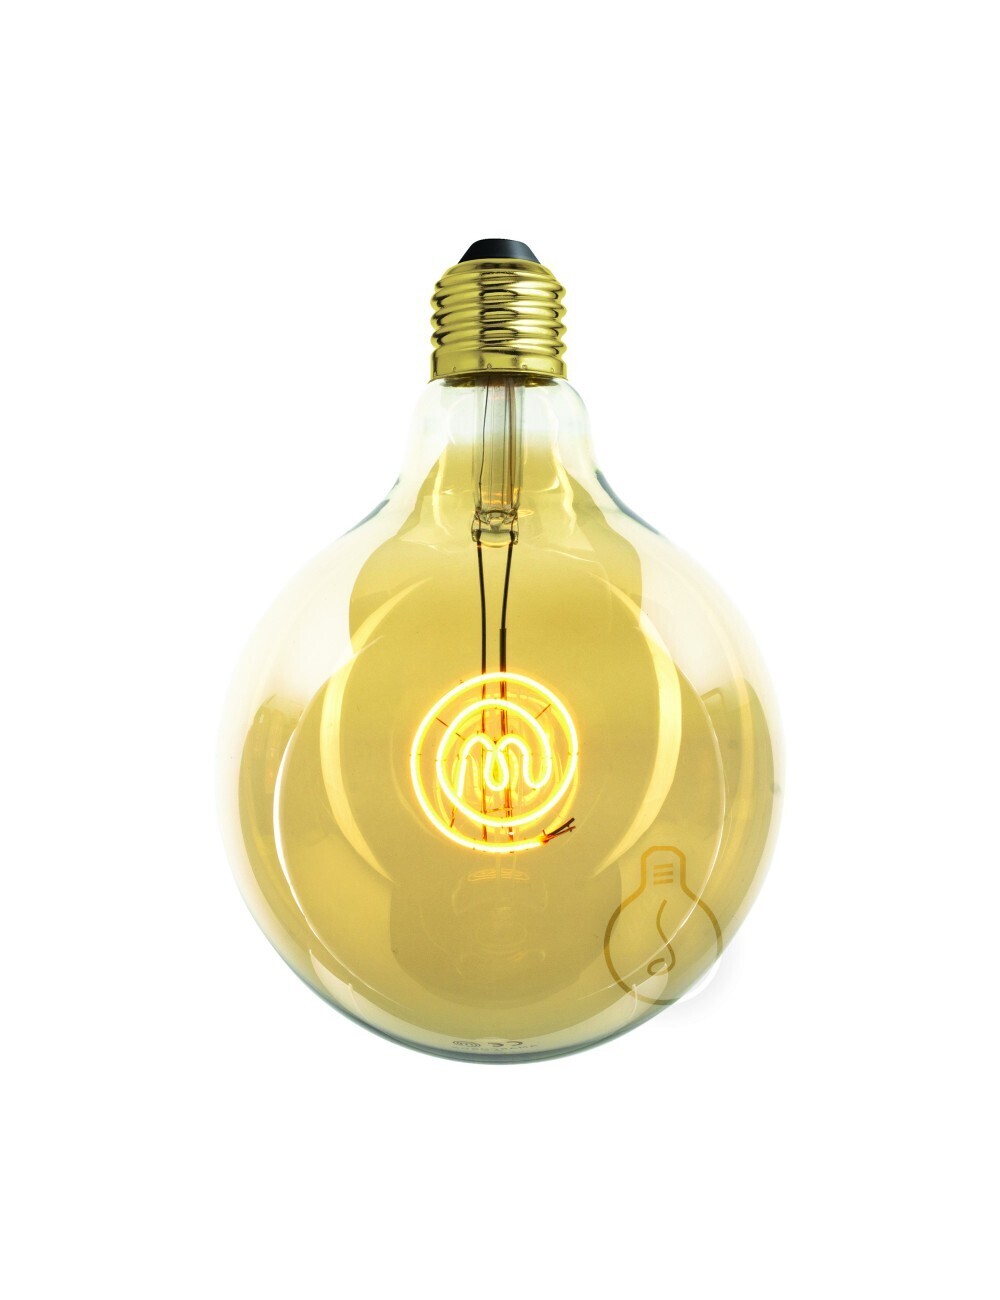 Lampadina filamento LED Masterchef Logo per Ristorante, Cucina, Negozi Gastonomia, Ristorazione 4W E27 Globo G125 vetro ambrato